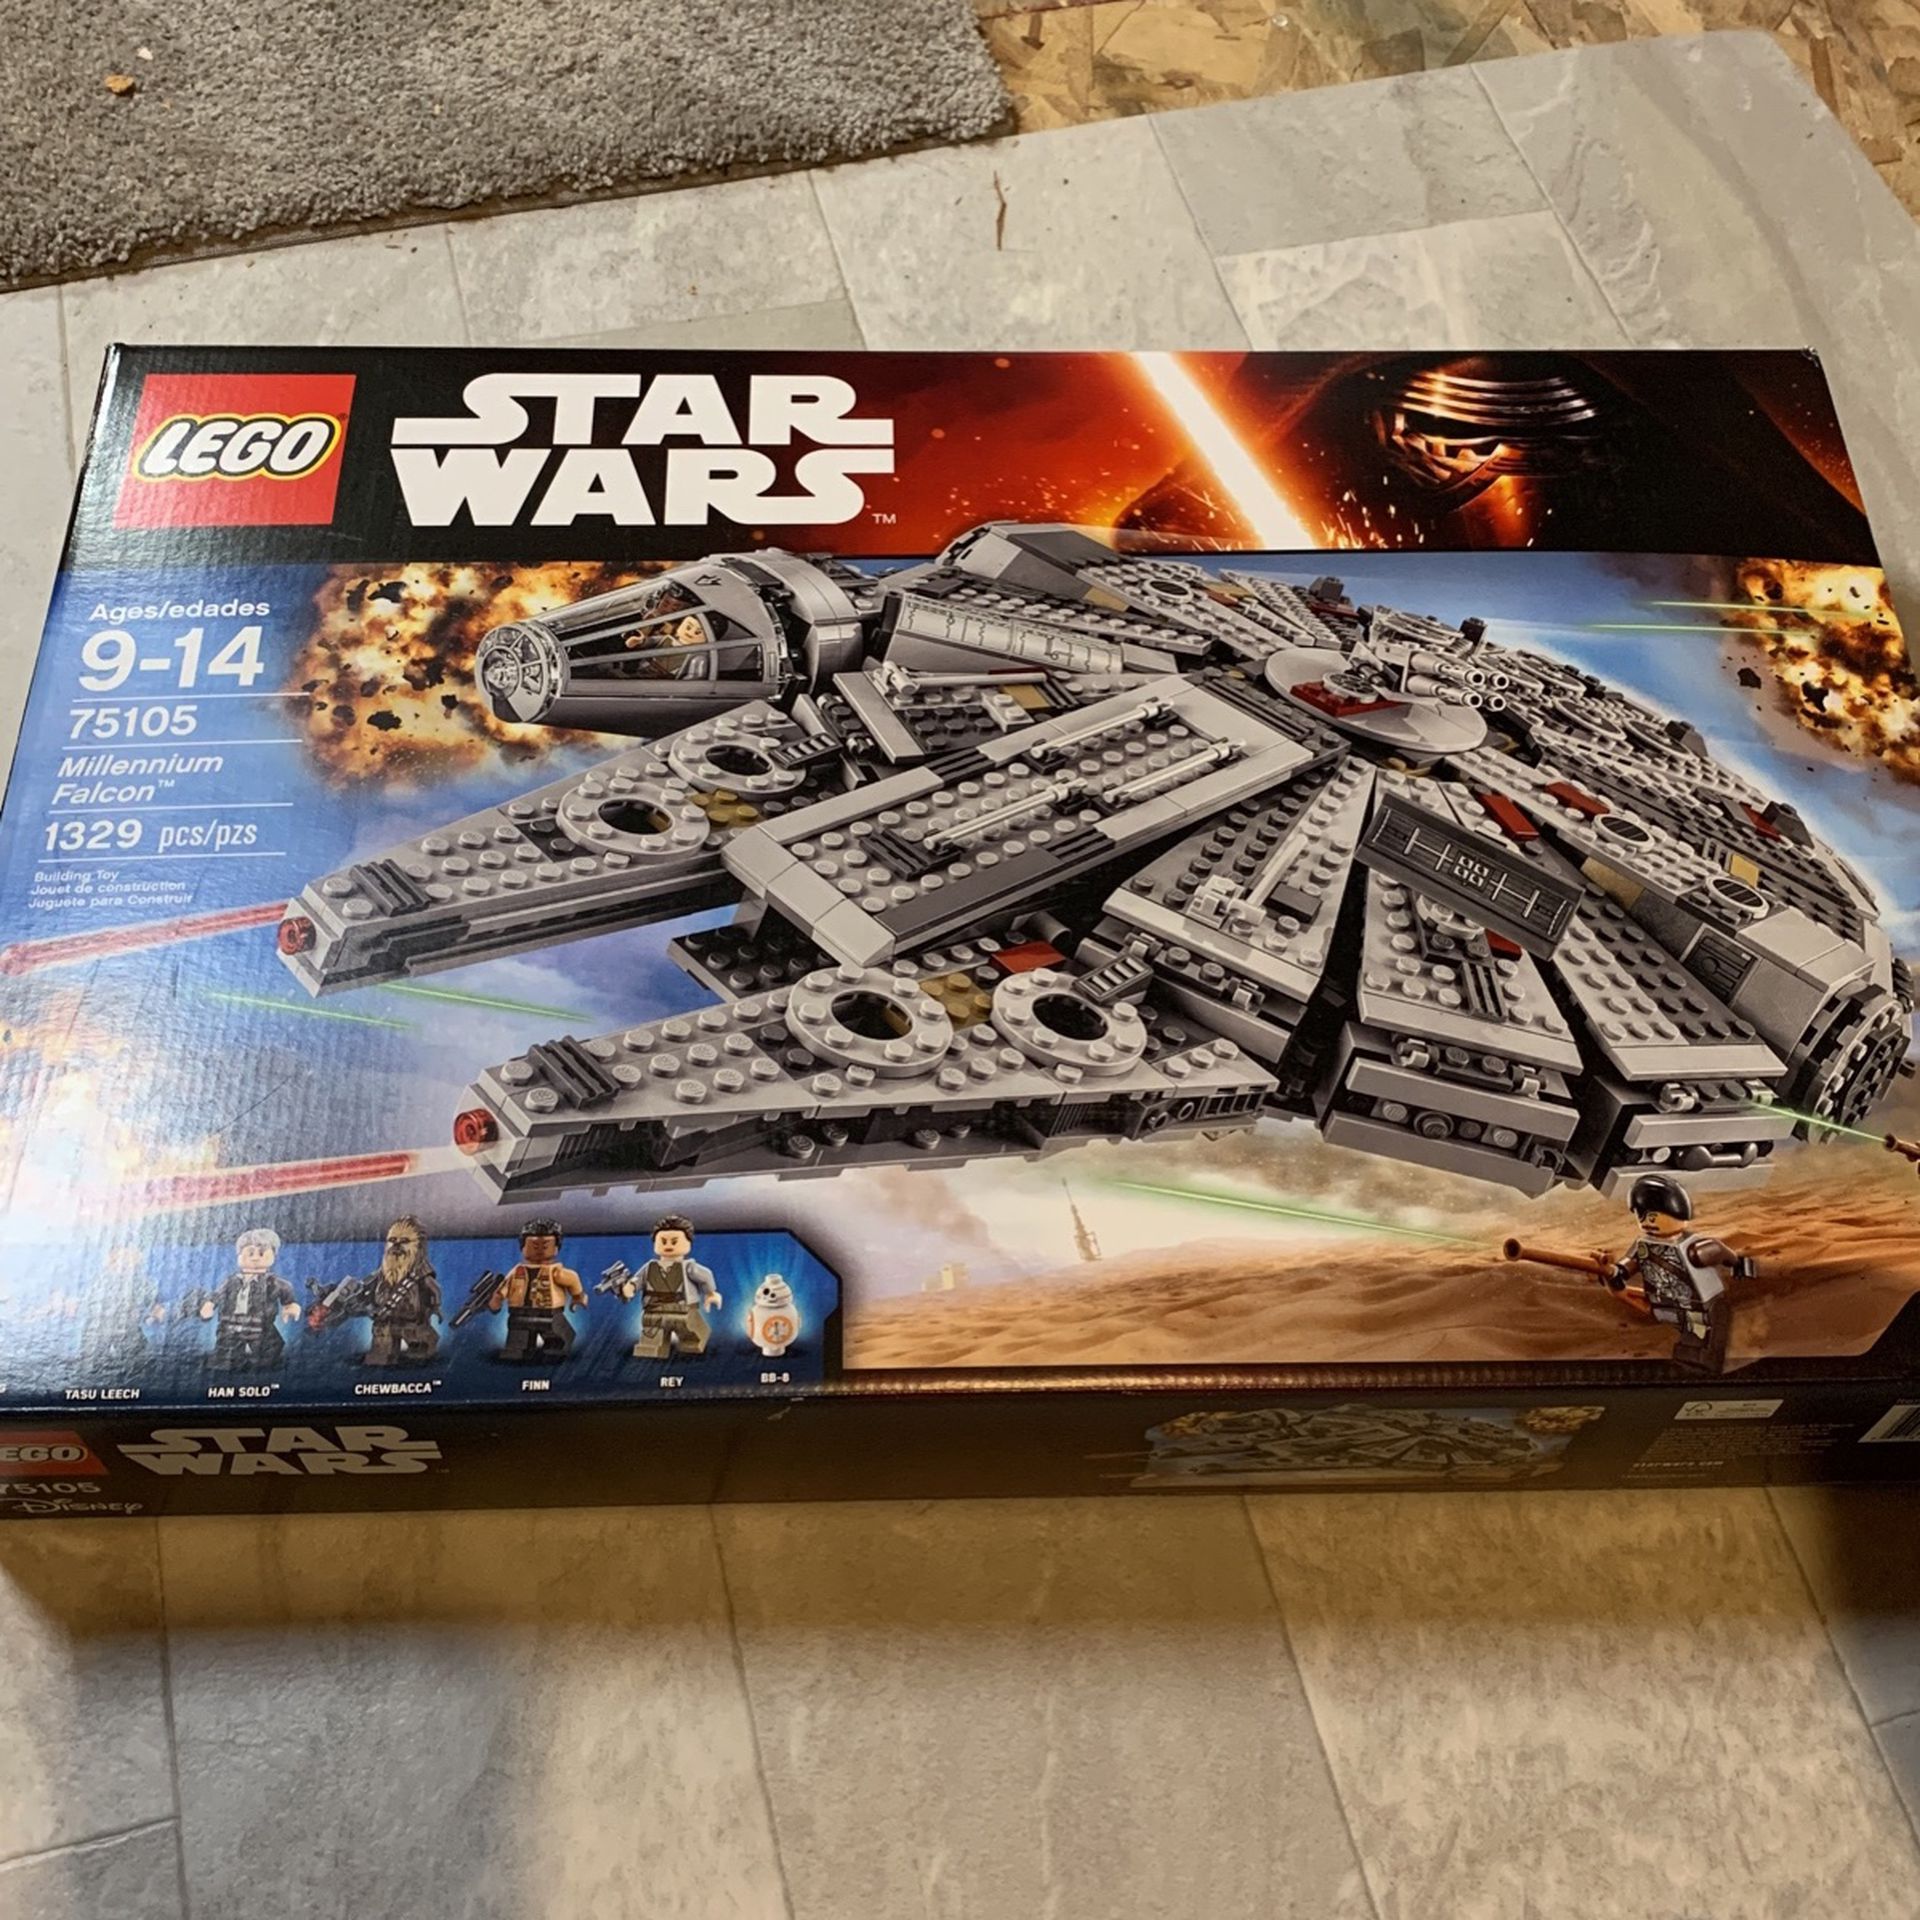 Star Wars Lego 75105 millennium falcon